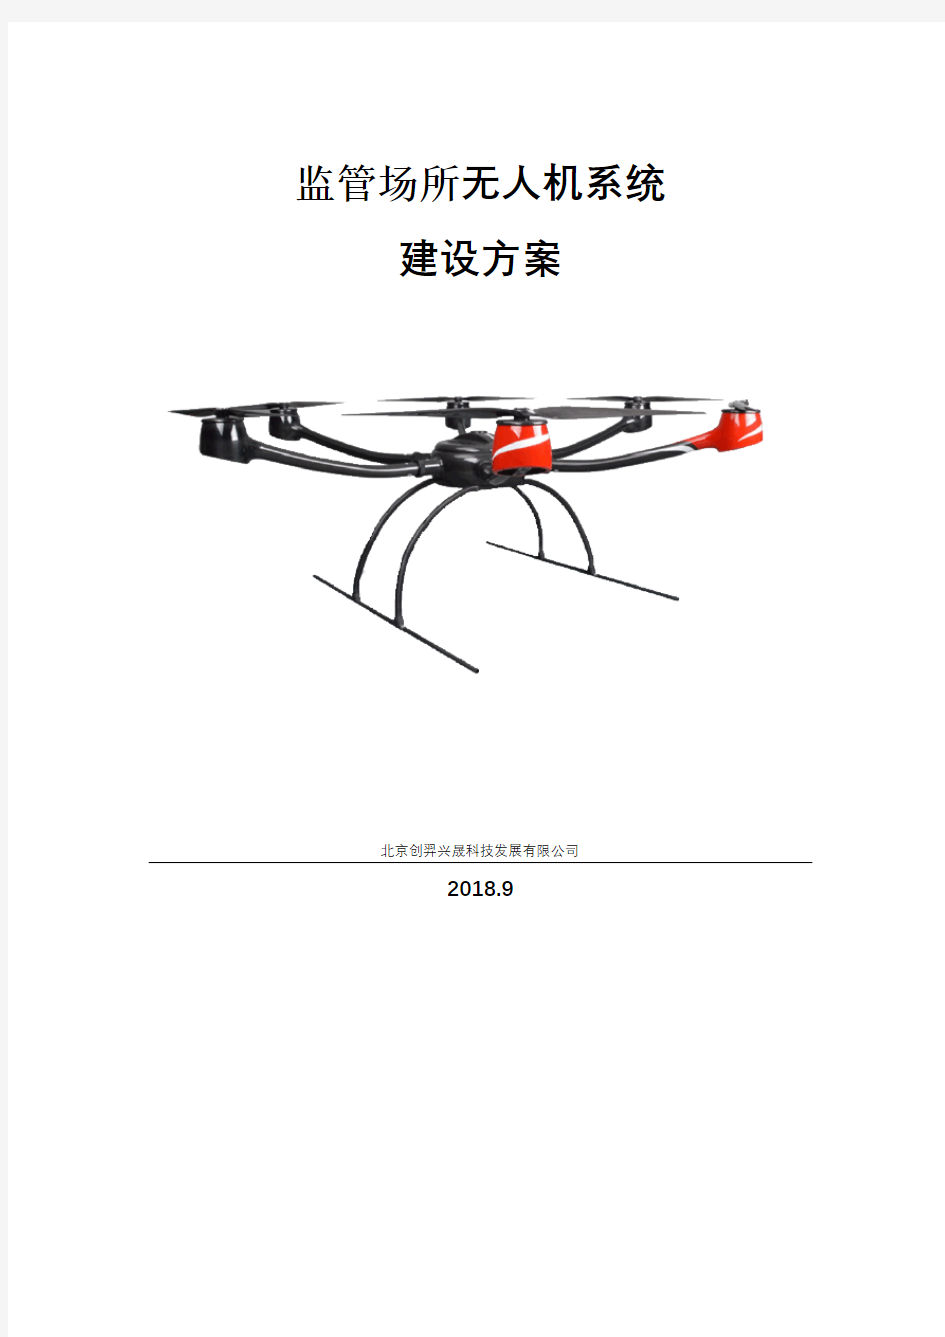 无人机系统建设方案(初稿)--李仁伟--2018.09.21